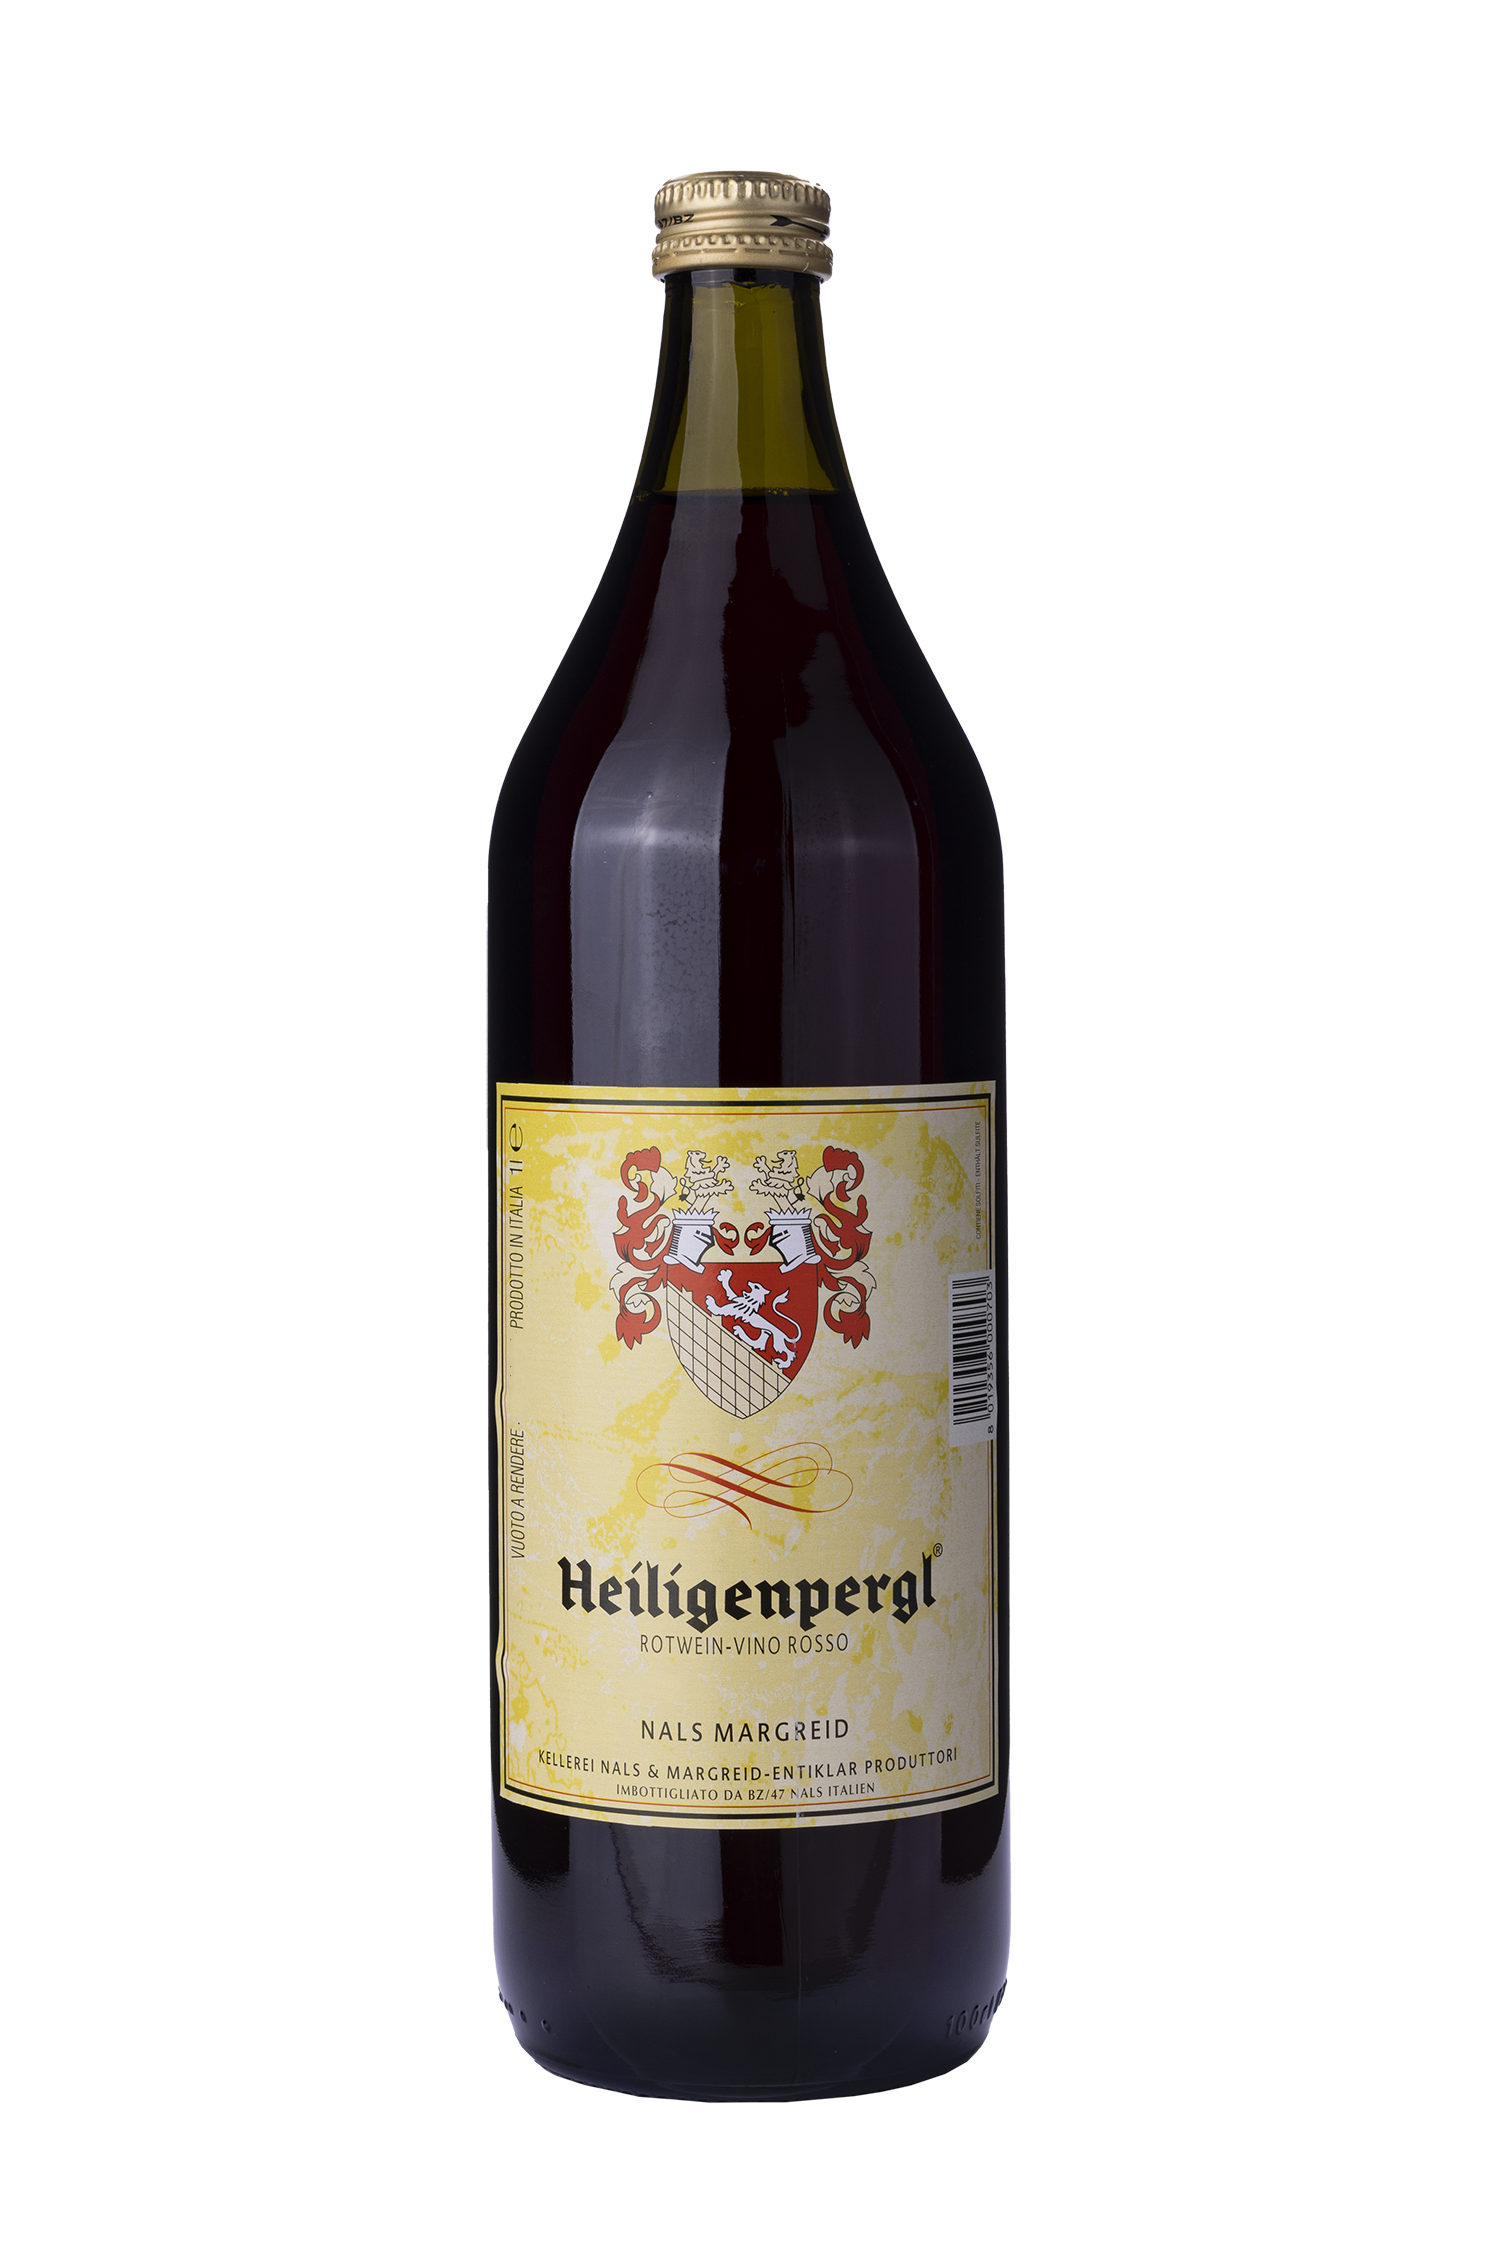 Heiligenpergl vino rosso - Kellerei Nals Margreid